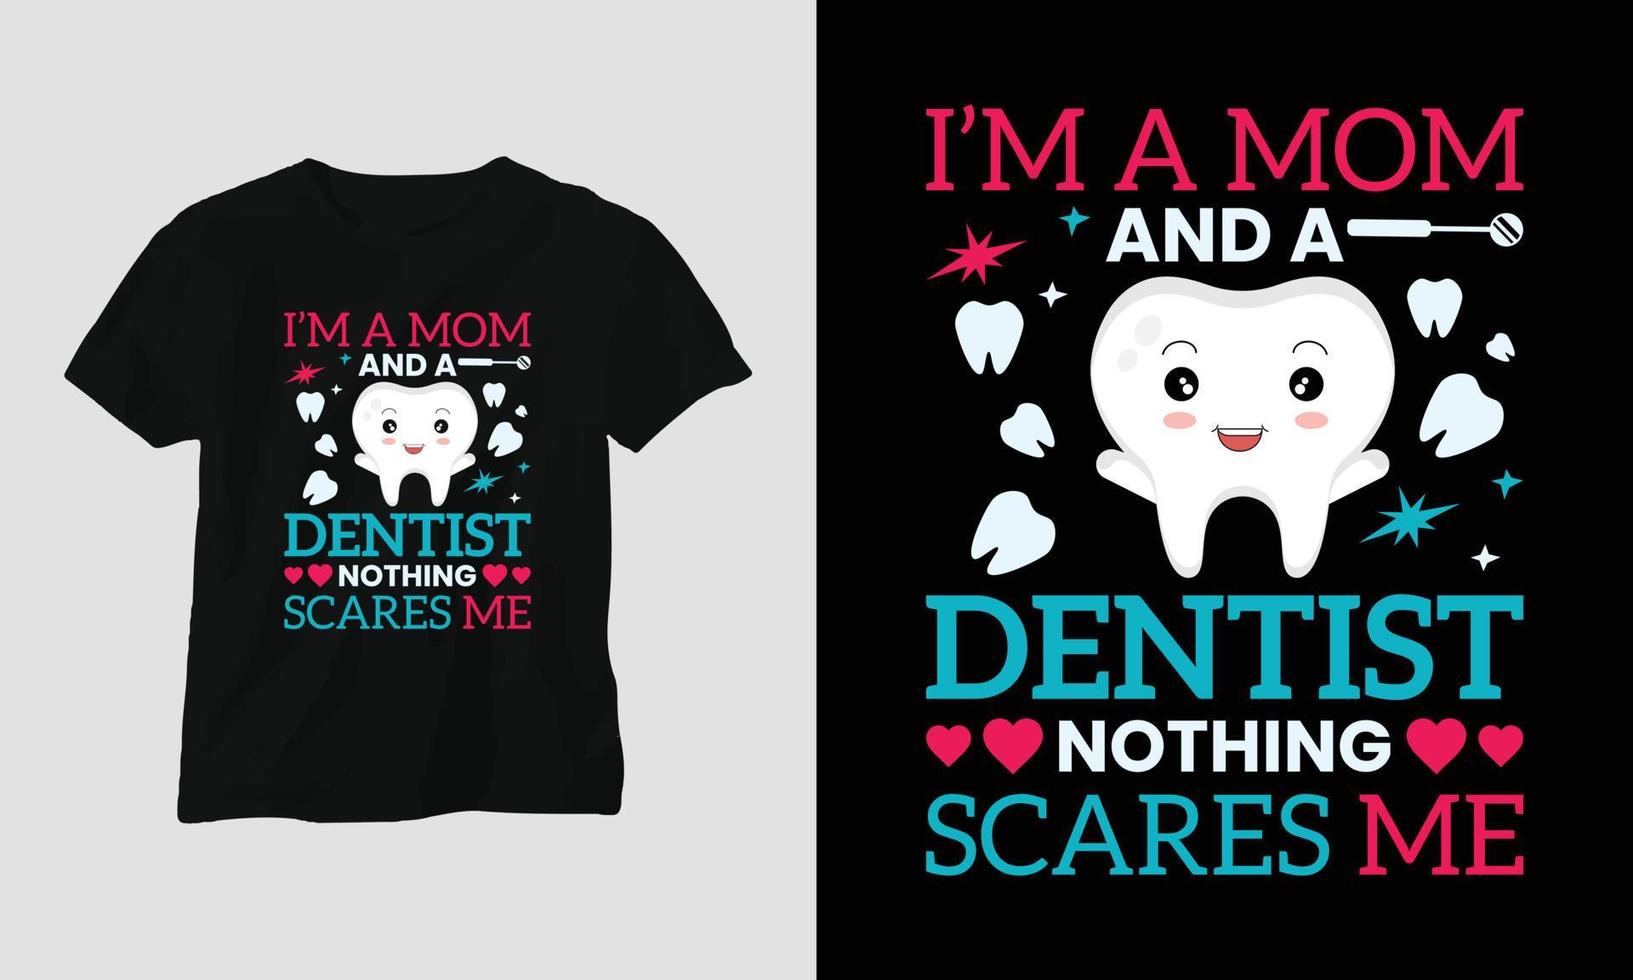 vektor tandläkare t-shirt eller affisch söt design med tecknad serie tand, dental element, etc.